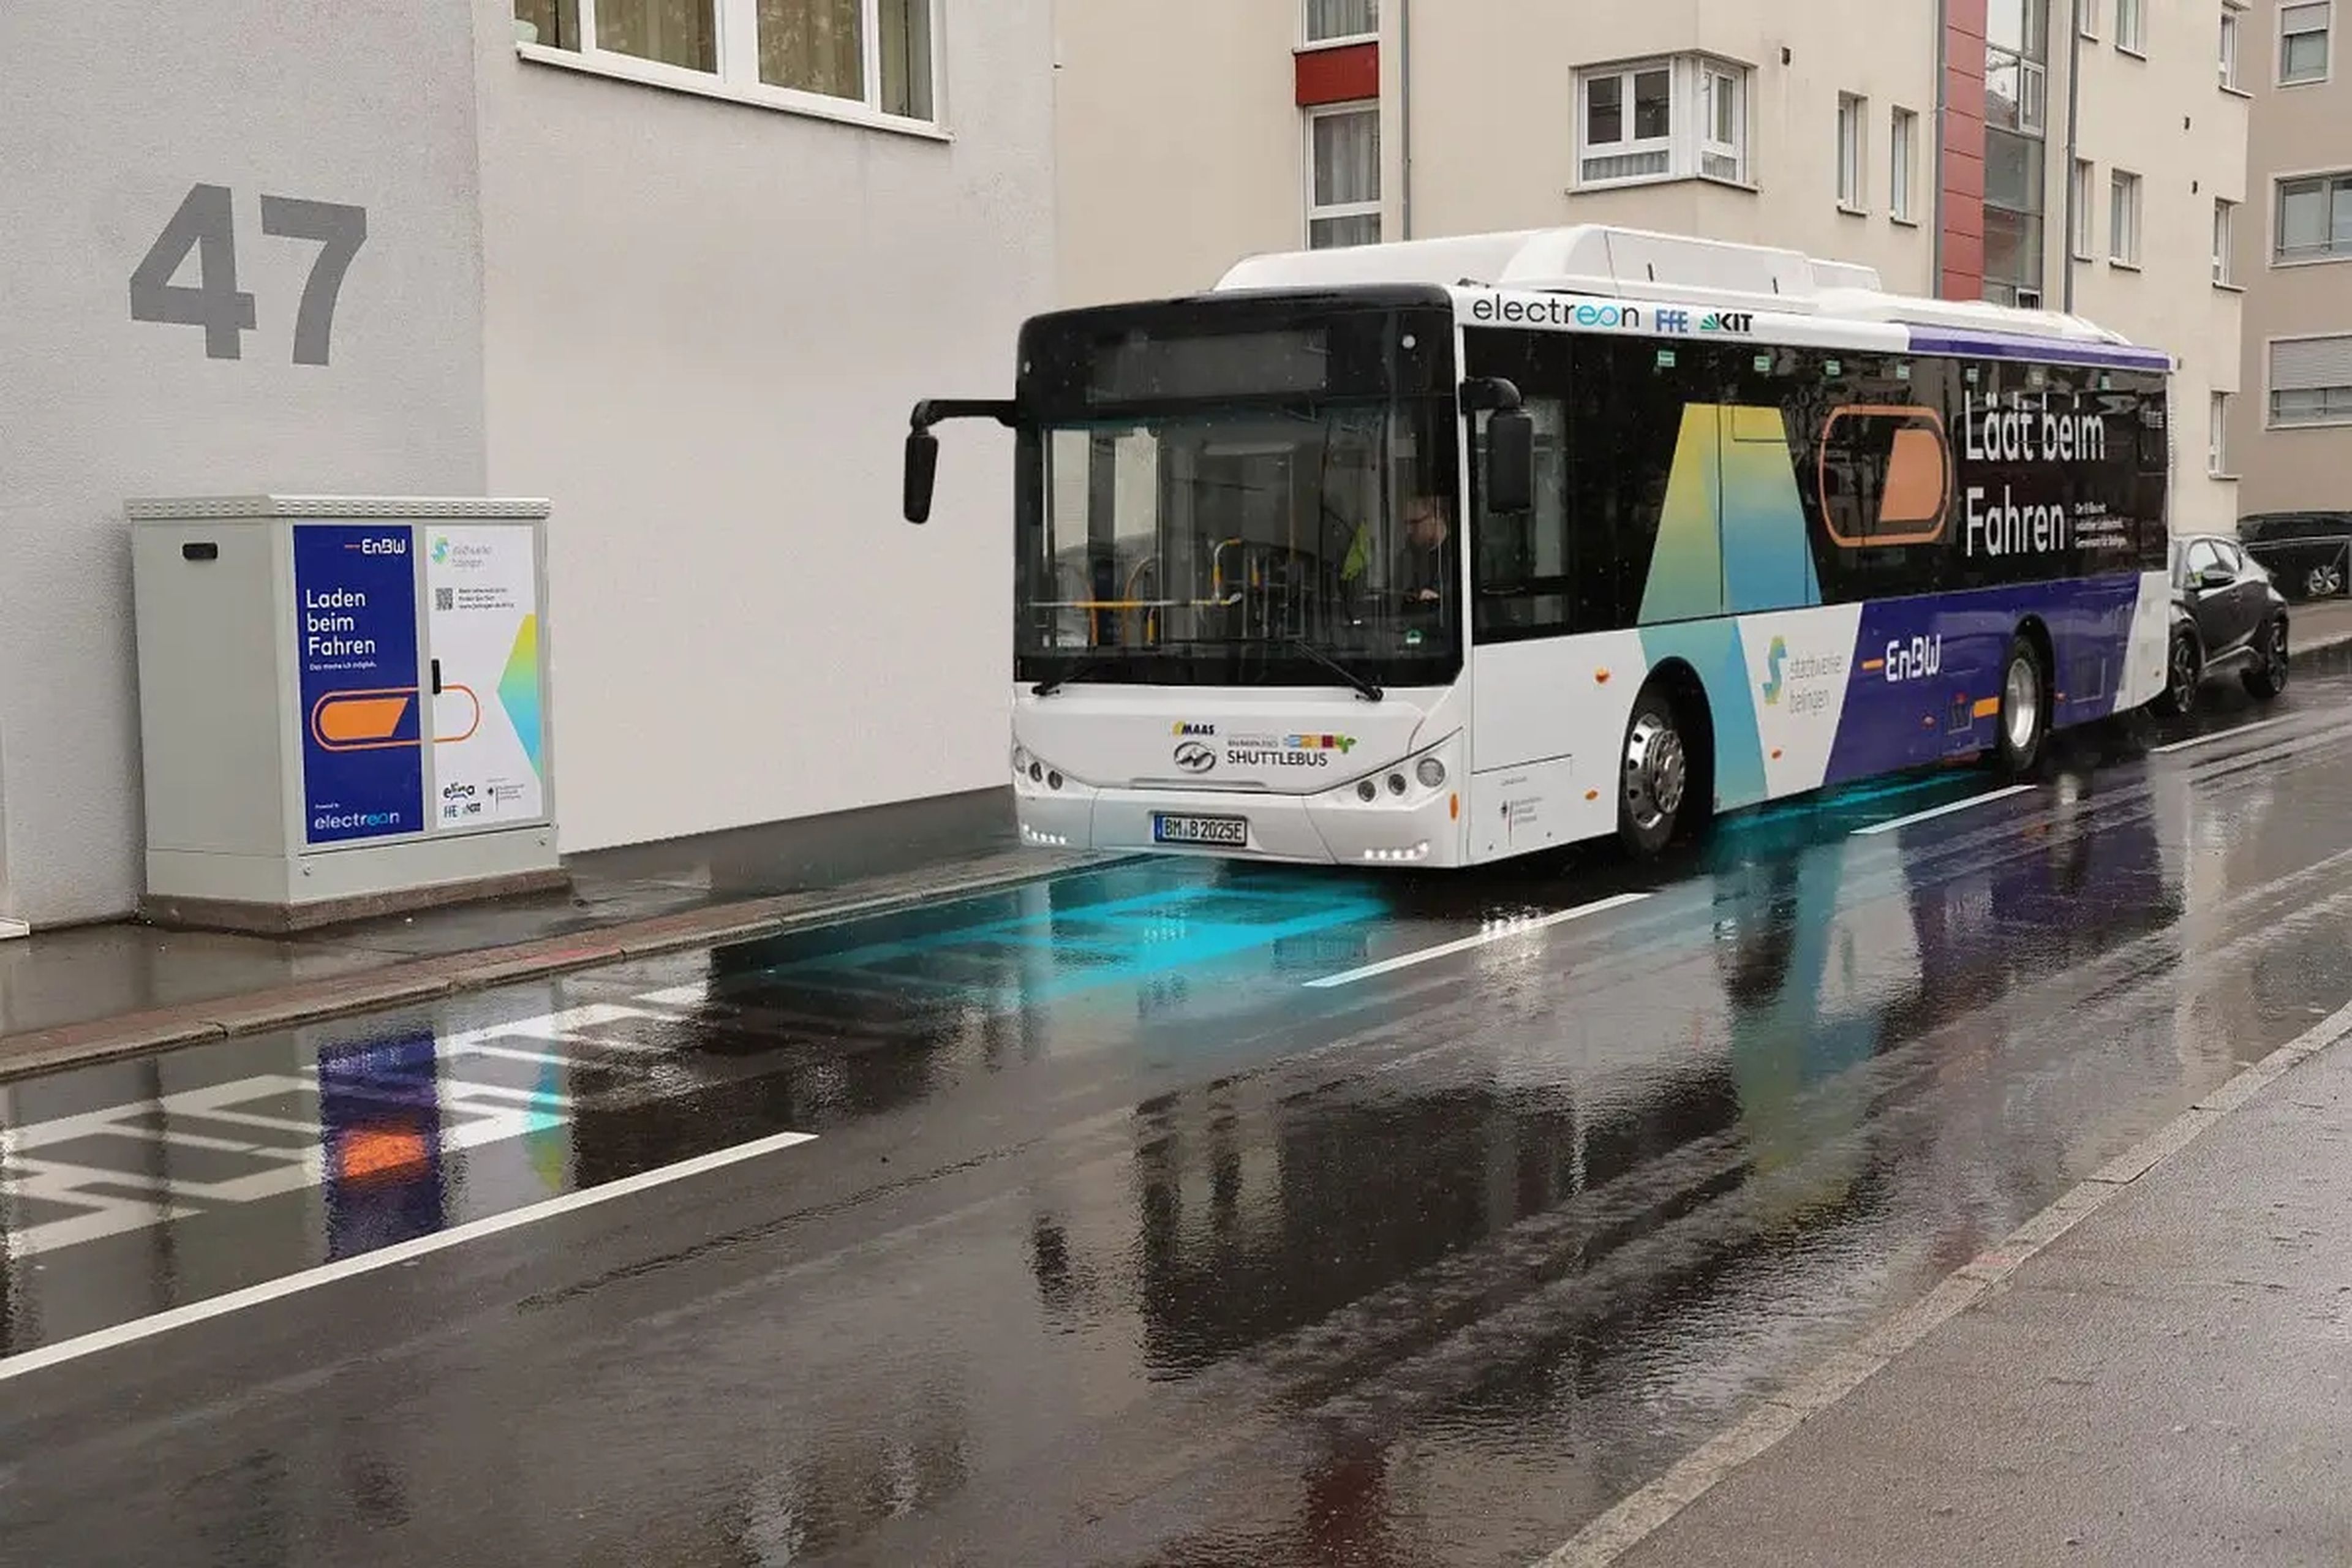 Electreon ha puesto en marcha varios proyectos de recarga inalámbrica de autobuses.